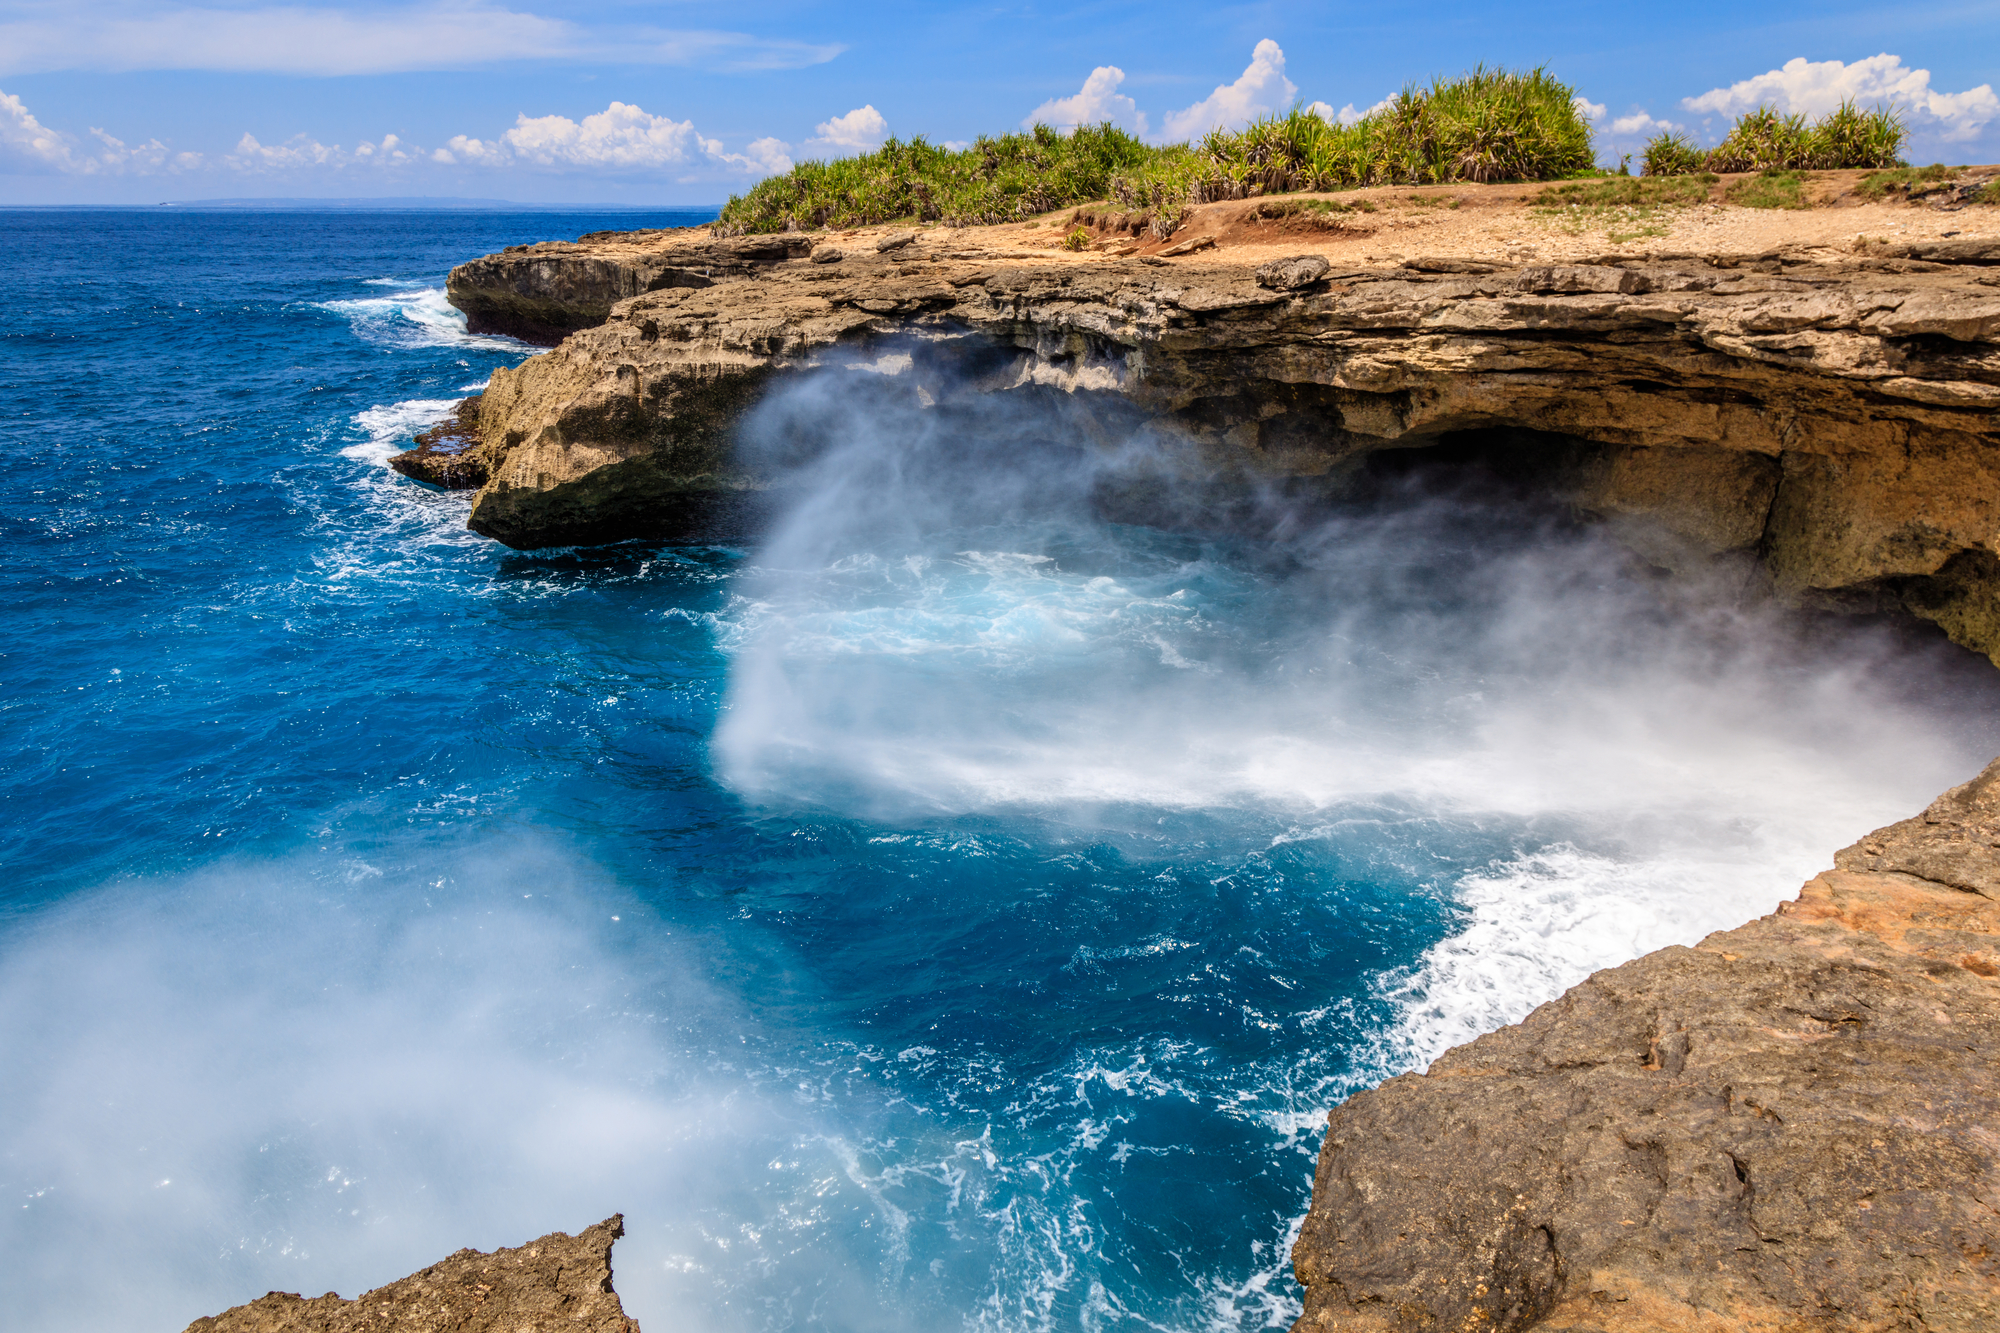 【匠心严选】Club Med巴厘岛自由行5日游【印度洋的晶莹海水，绵白沙滩，感受热带天堂的迷人魅力】